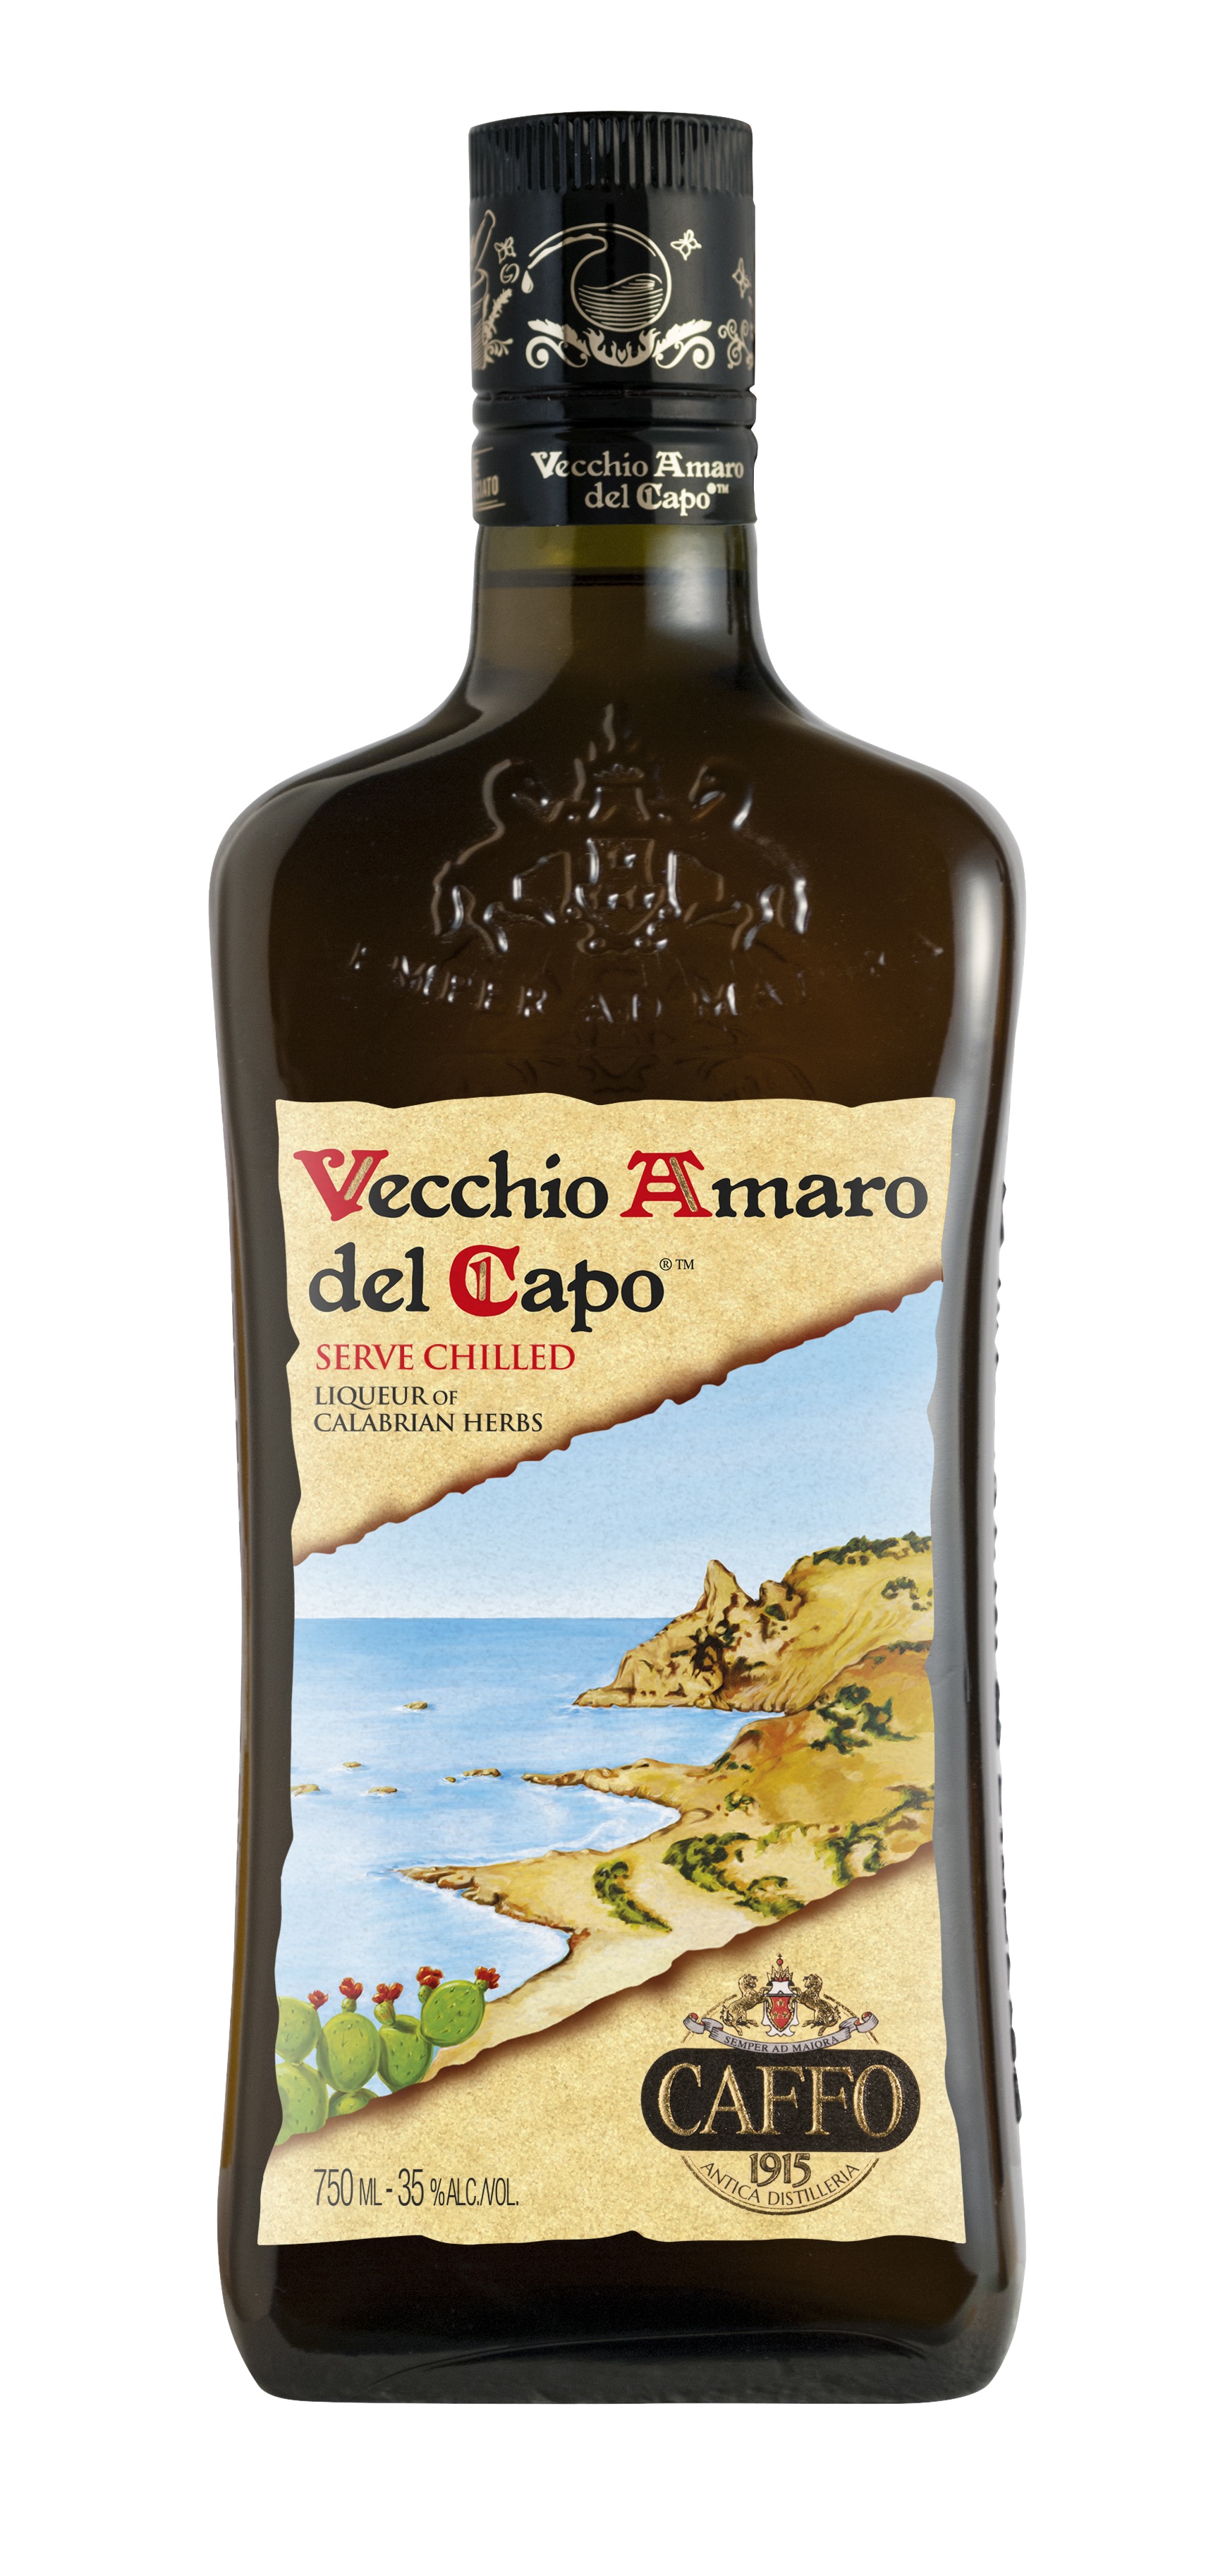 Vecchio Amaro del Capo, Caffo - Skurnik Wines & Spirits